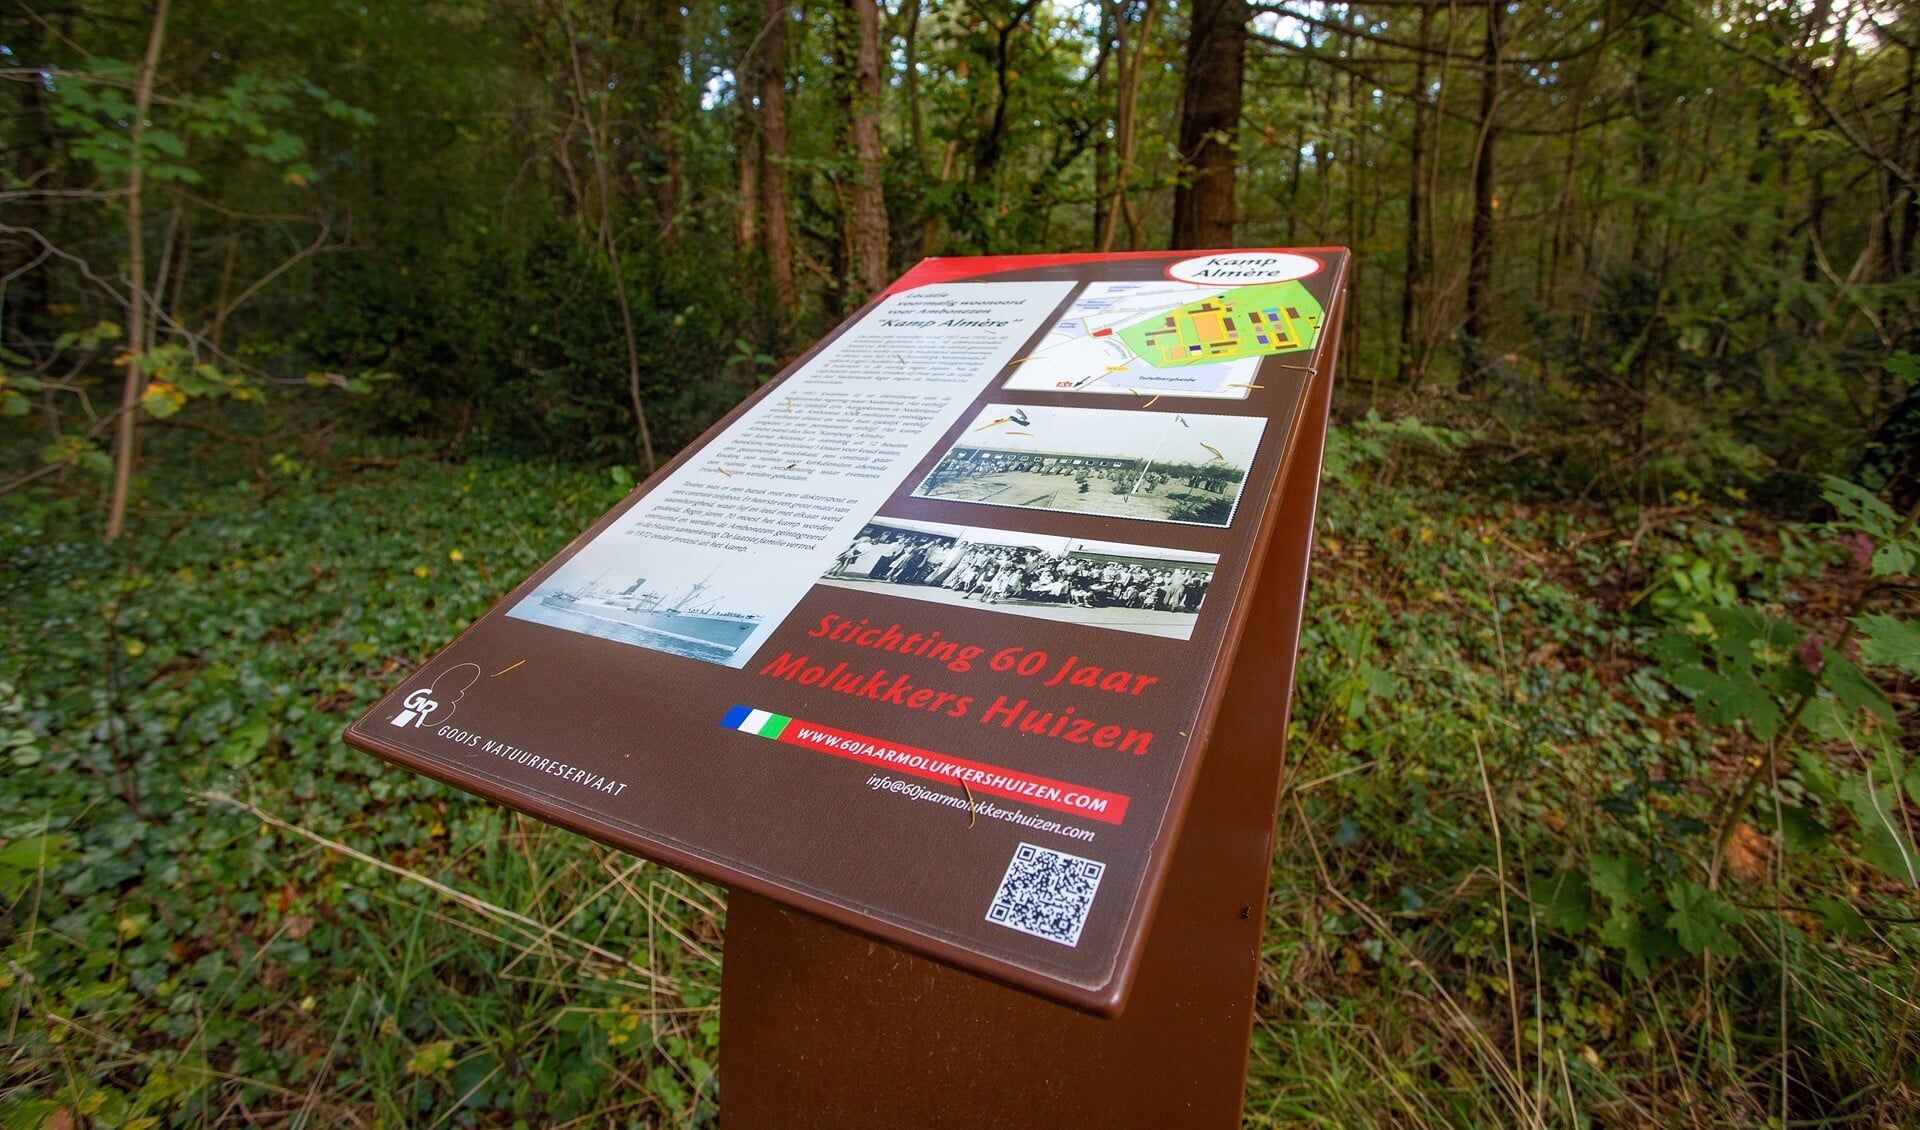 De plaquette ter herinnering aan Kamp Almère dat bij de Oud Bussummerweg in het bos lag en waar Molukkers werden opgevangen.